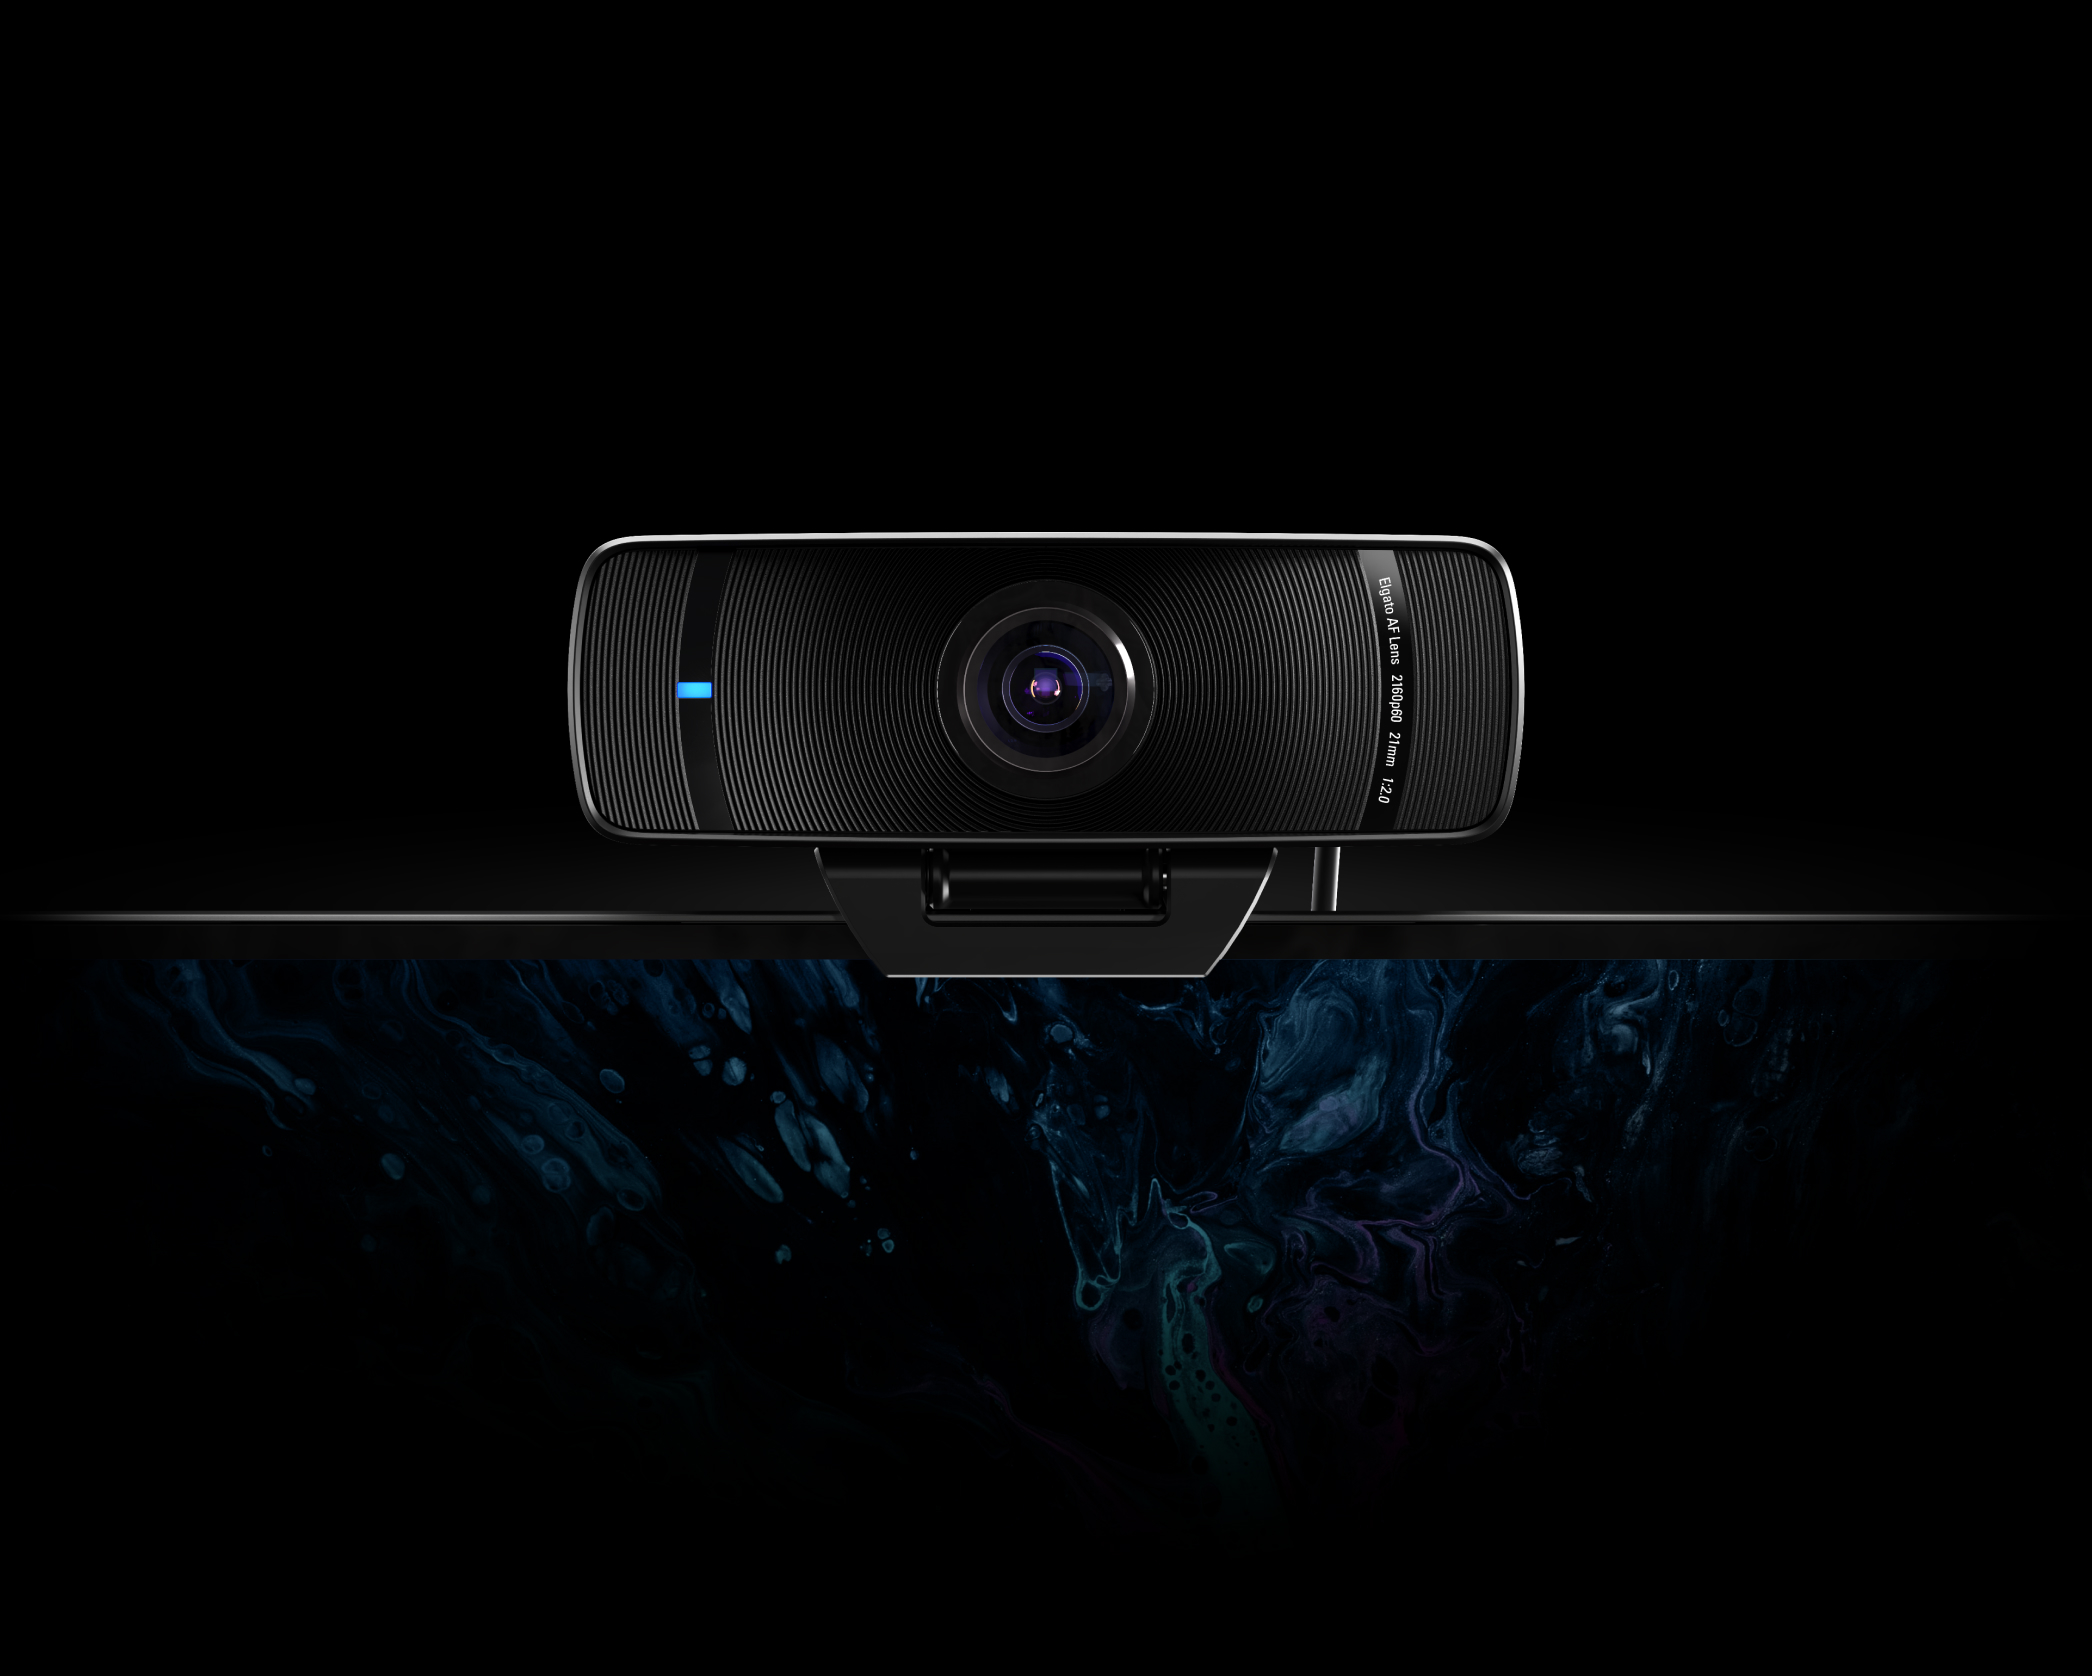 Elgato Facecam Full HD USB Type-C 3.0 Webcam 10WAA9901 - Adorama